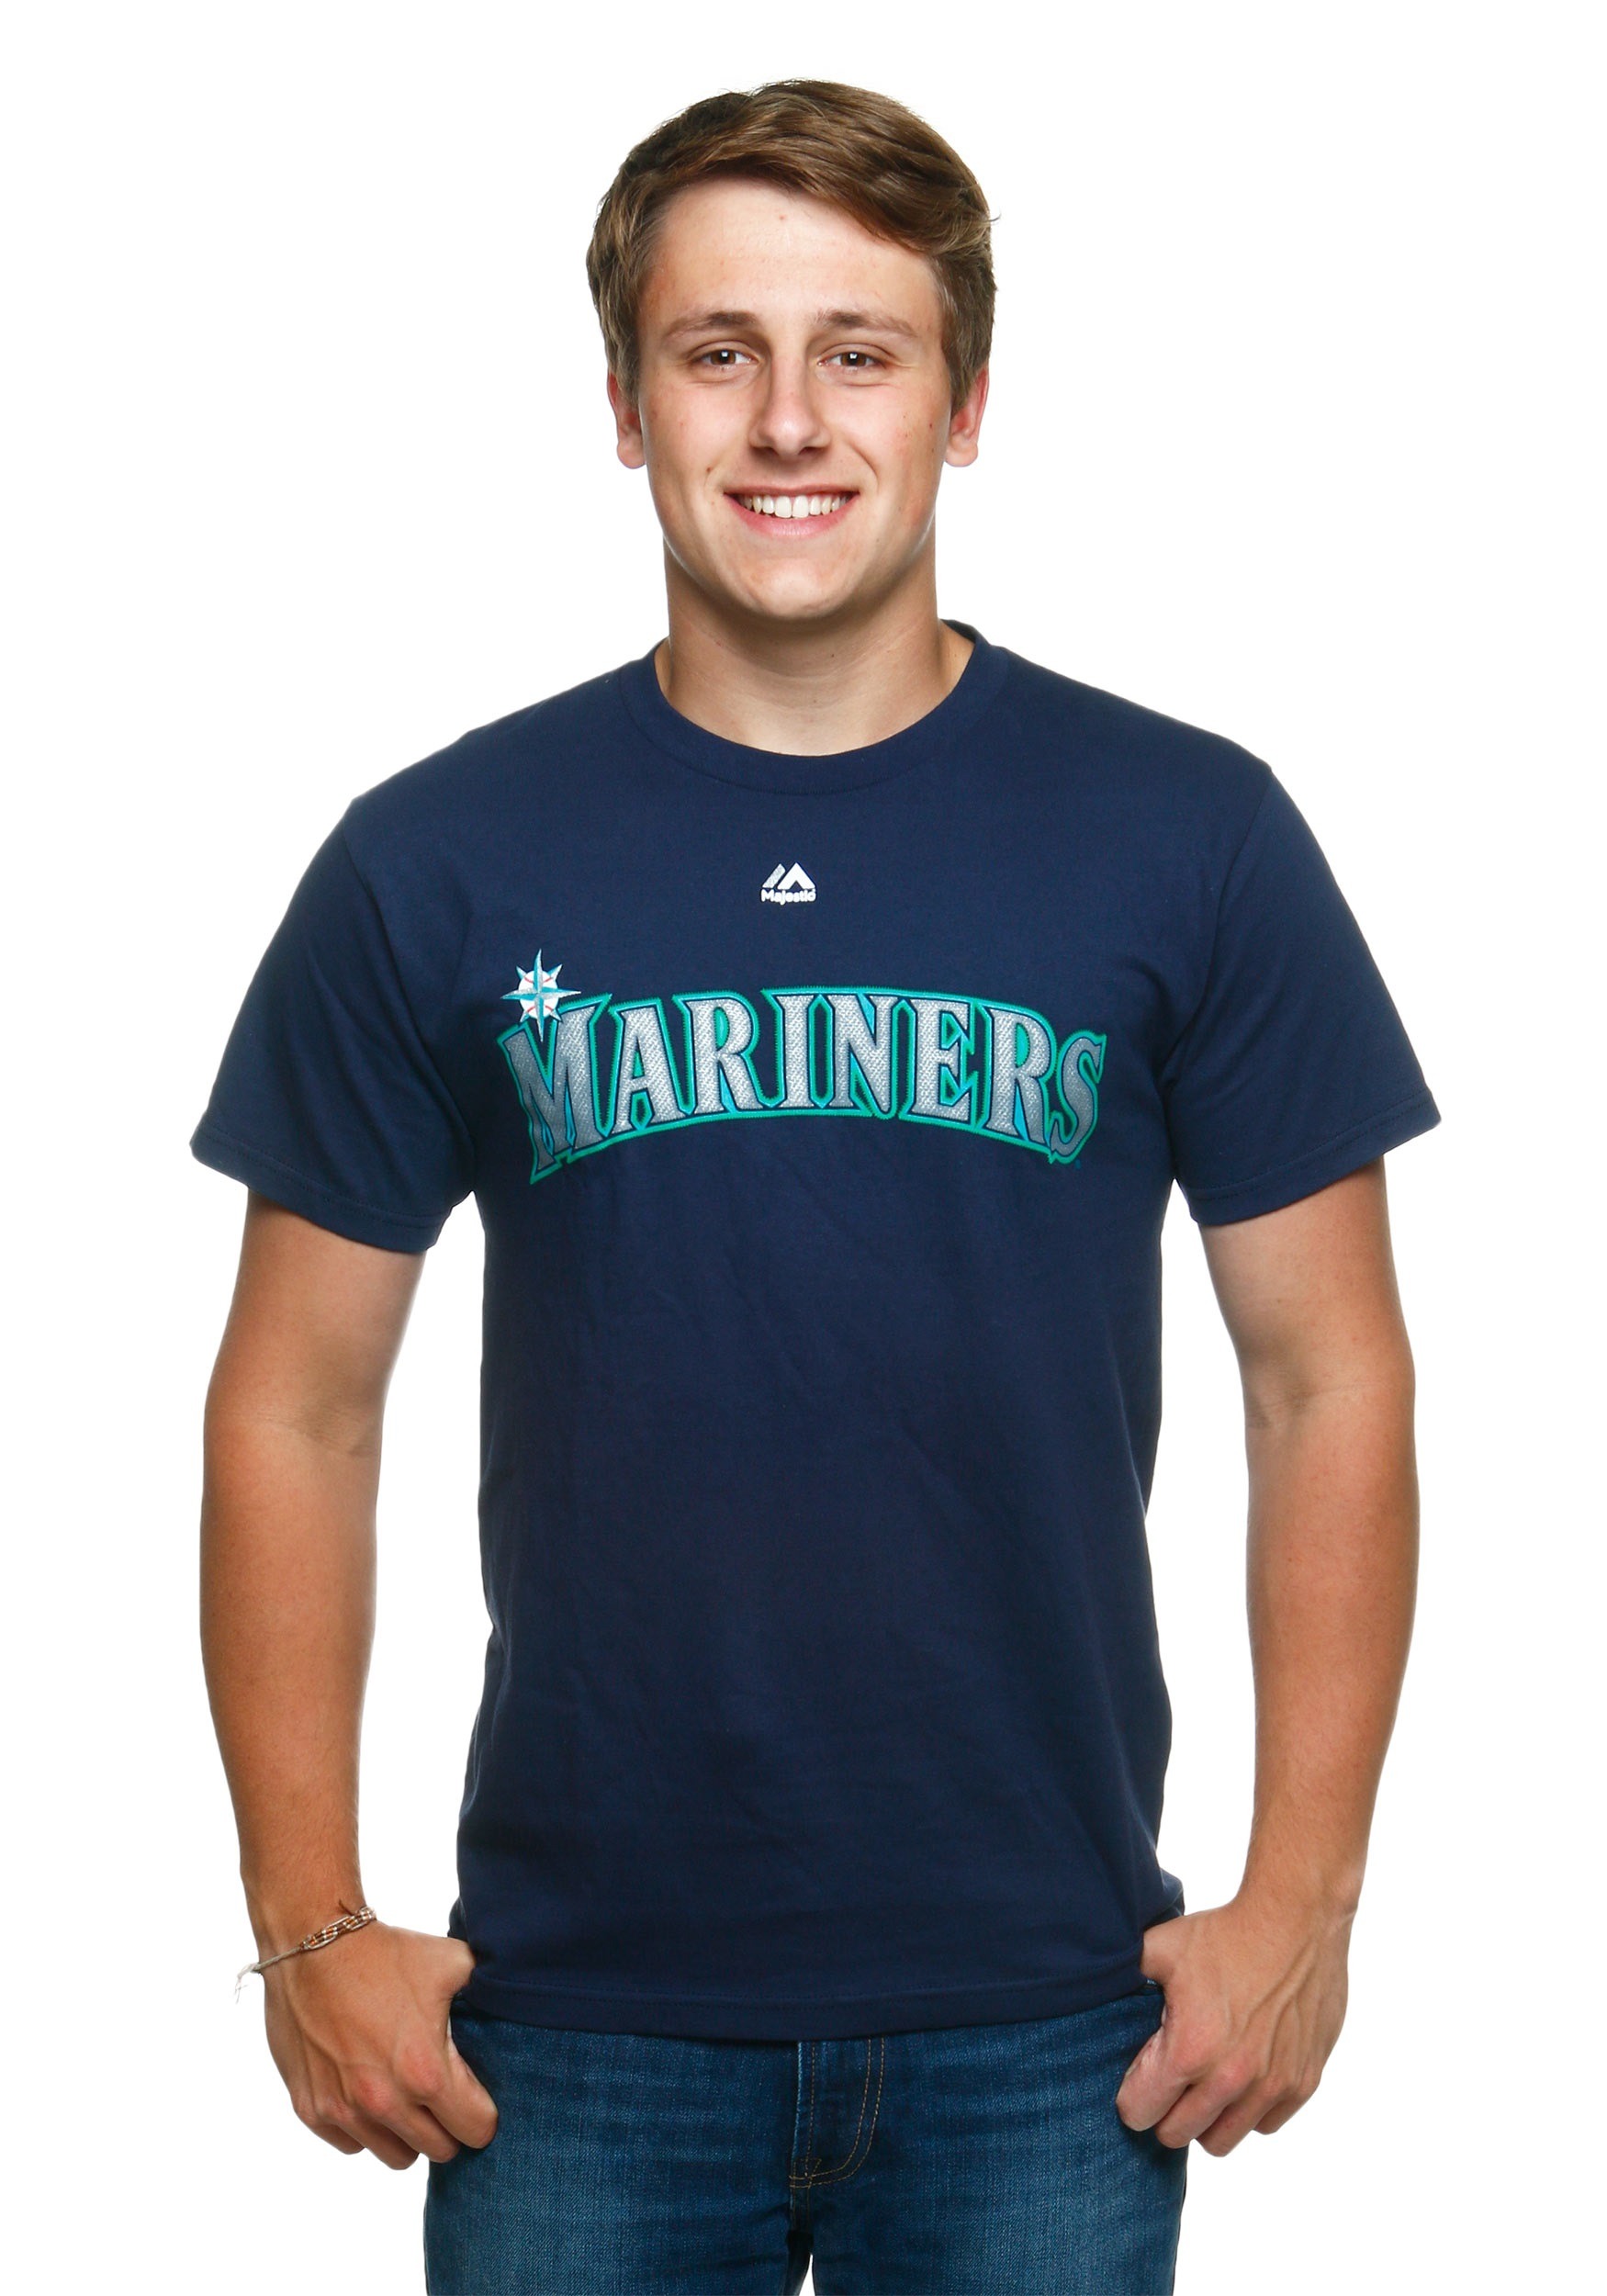 mariners shirt